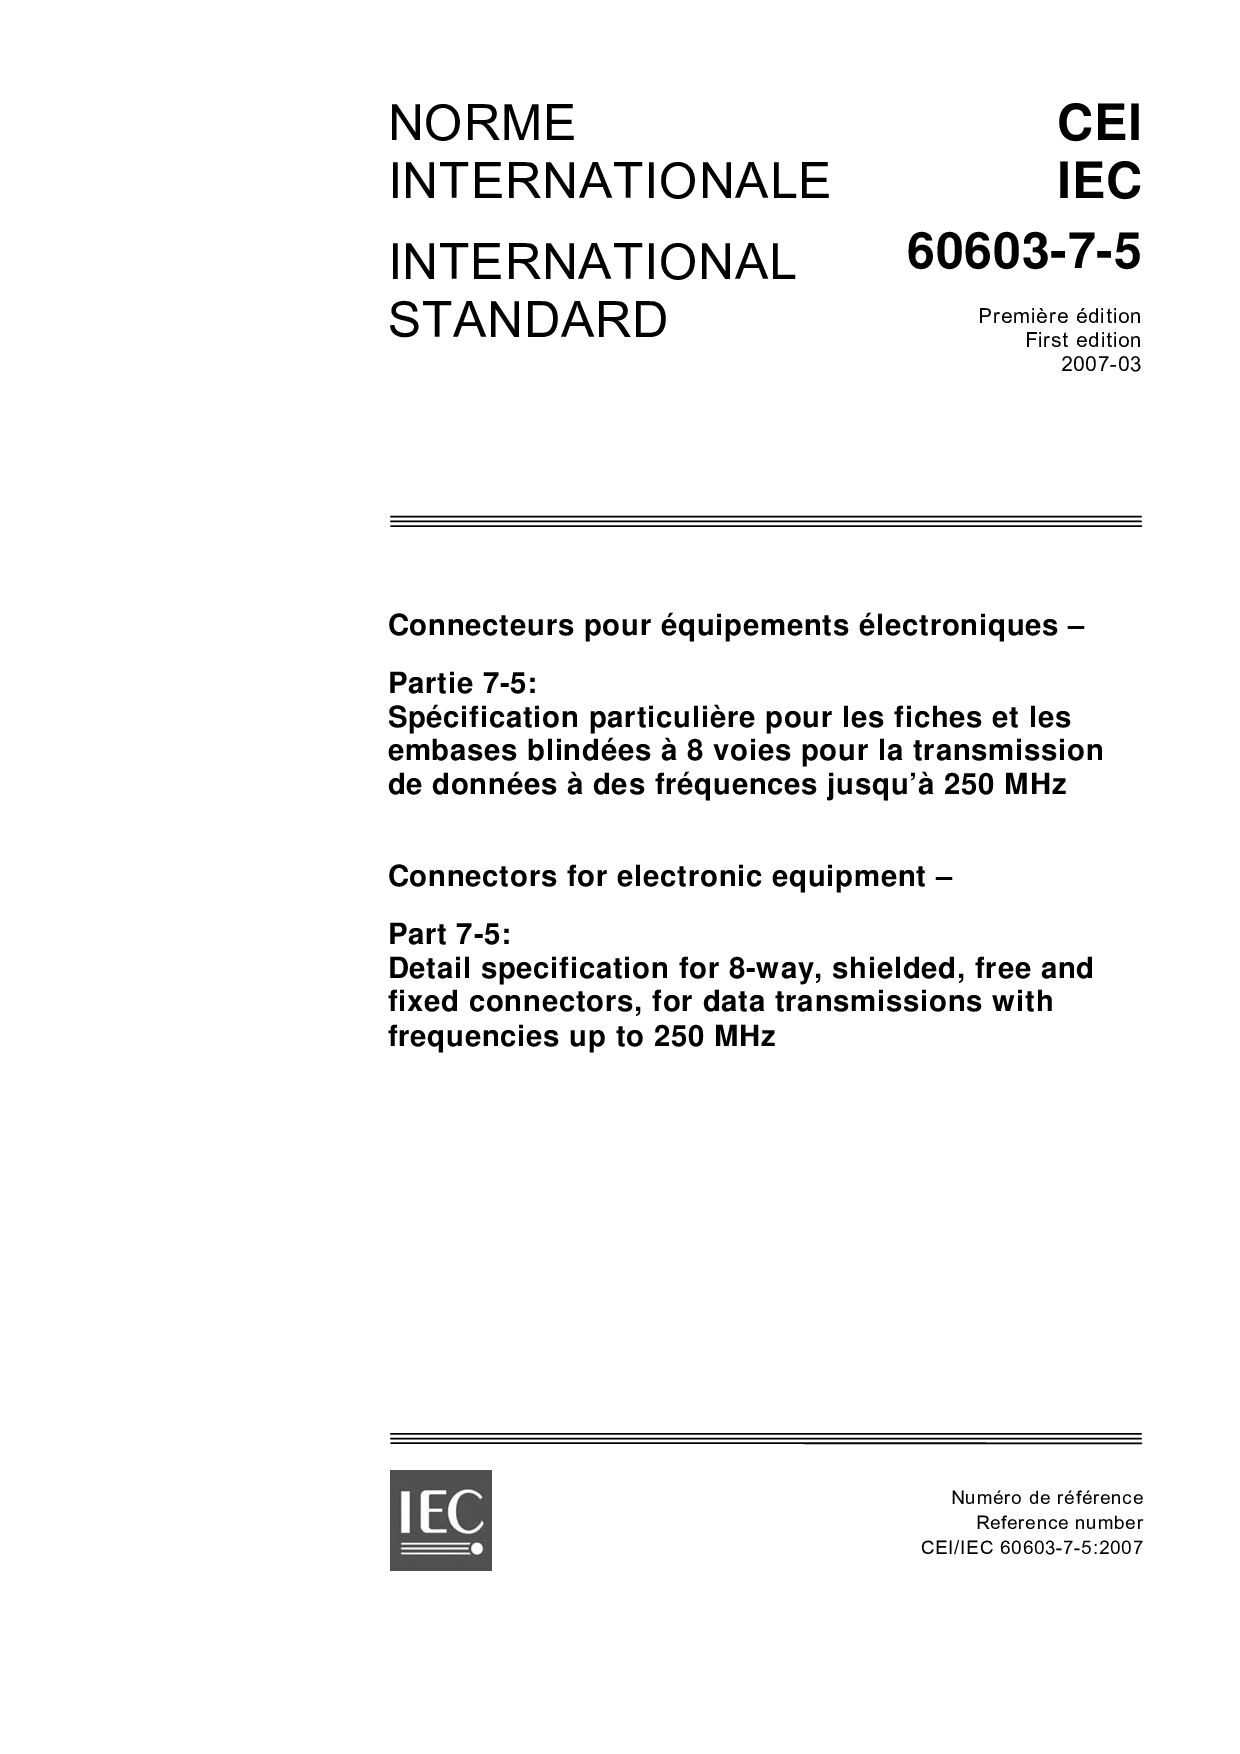 IEC 60603-7-5-2007